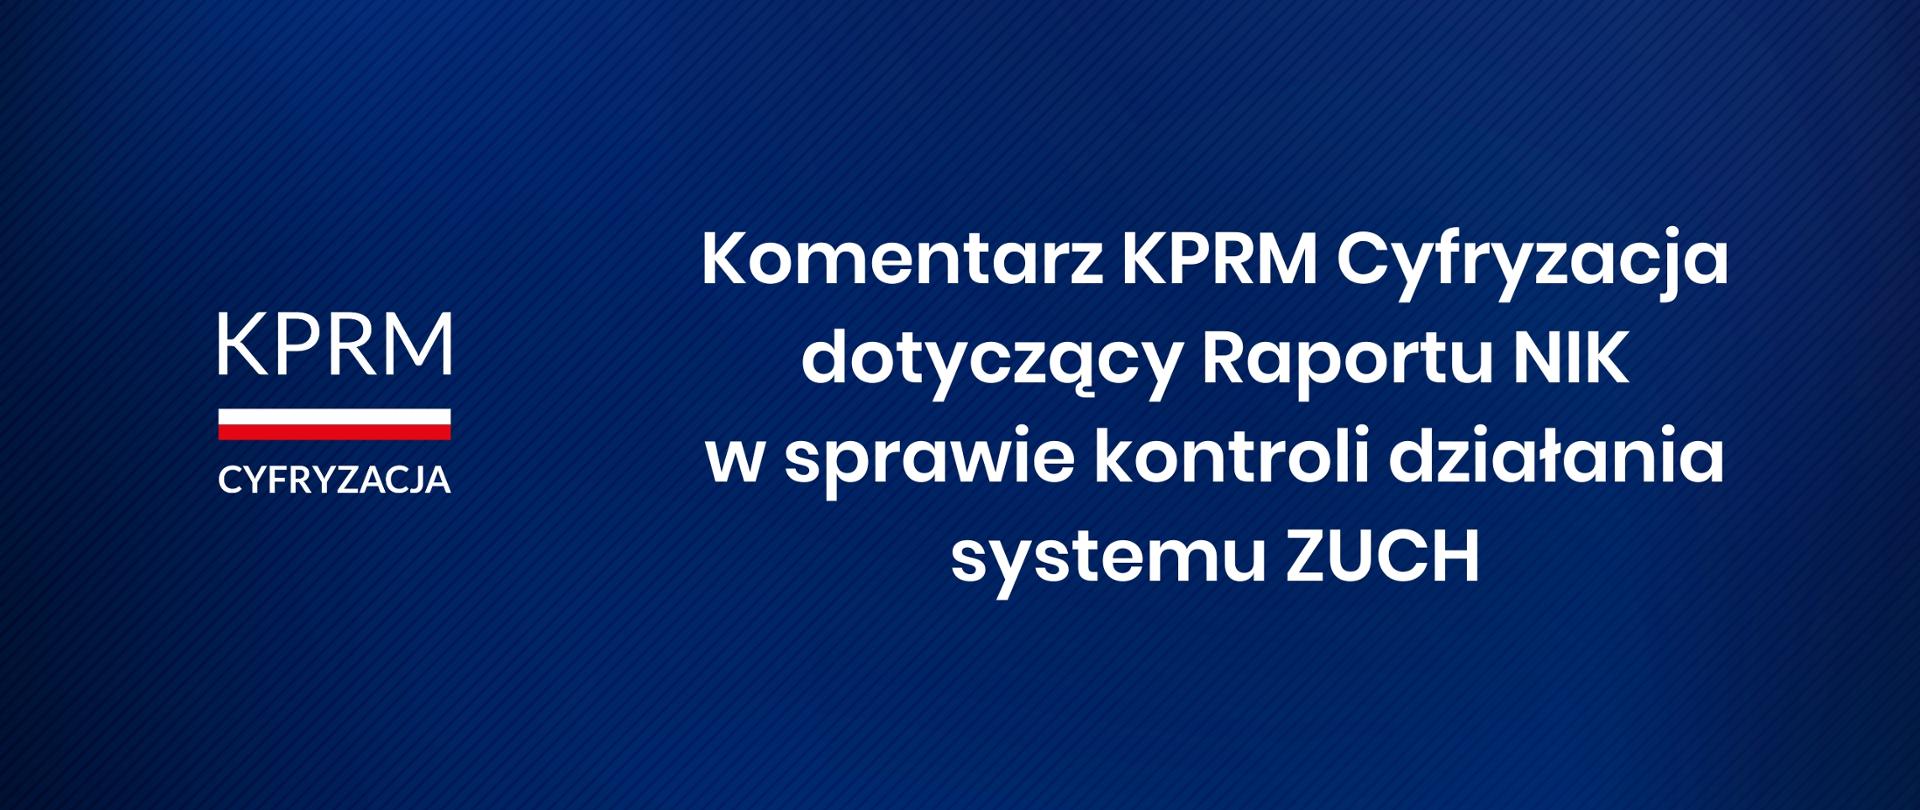 Grafika. Po lewej logotyp KPRM Cyfryzacja. Po prawej napis: Komentarz KPRM Cyfryzacja dotyczący Raportu NIK w sprawie kontroli działania systemu ZUCH